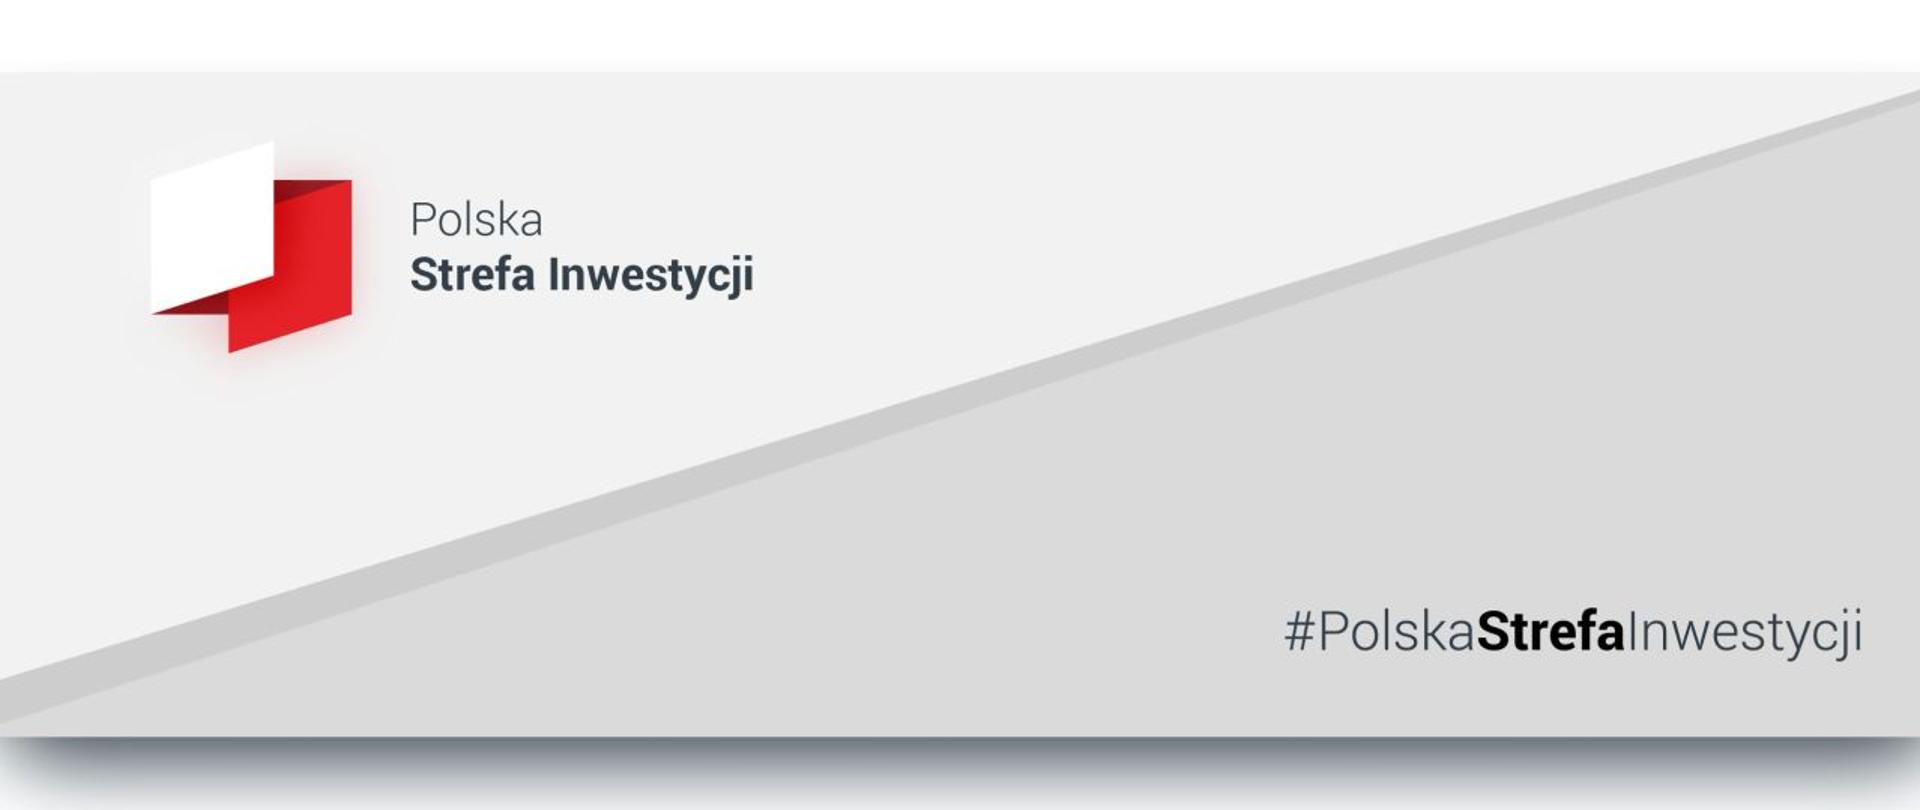 Na szarym tle napisy Polska strefa Inwestycji, w lewym górnym rogu grafika przypominająca w zarysie kształt Polski